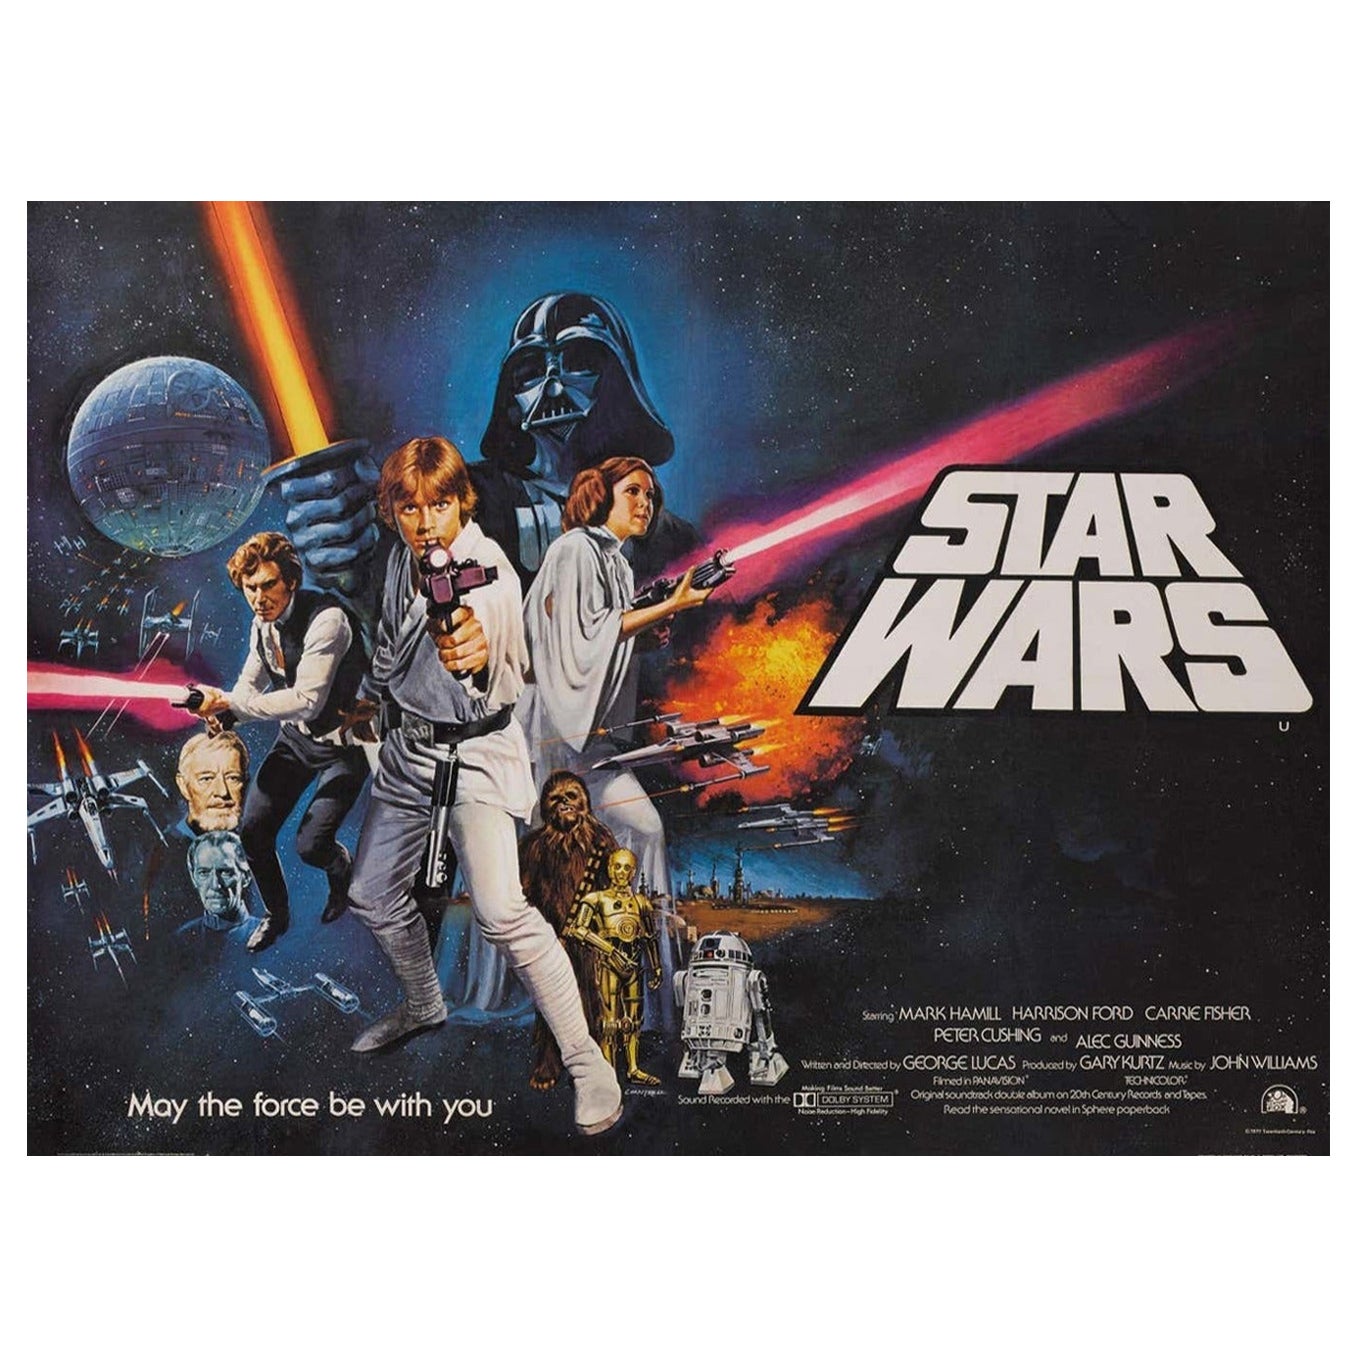 1977 Star Wars Original Vintage Poster